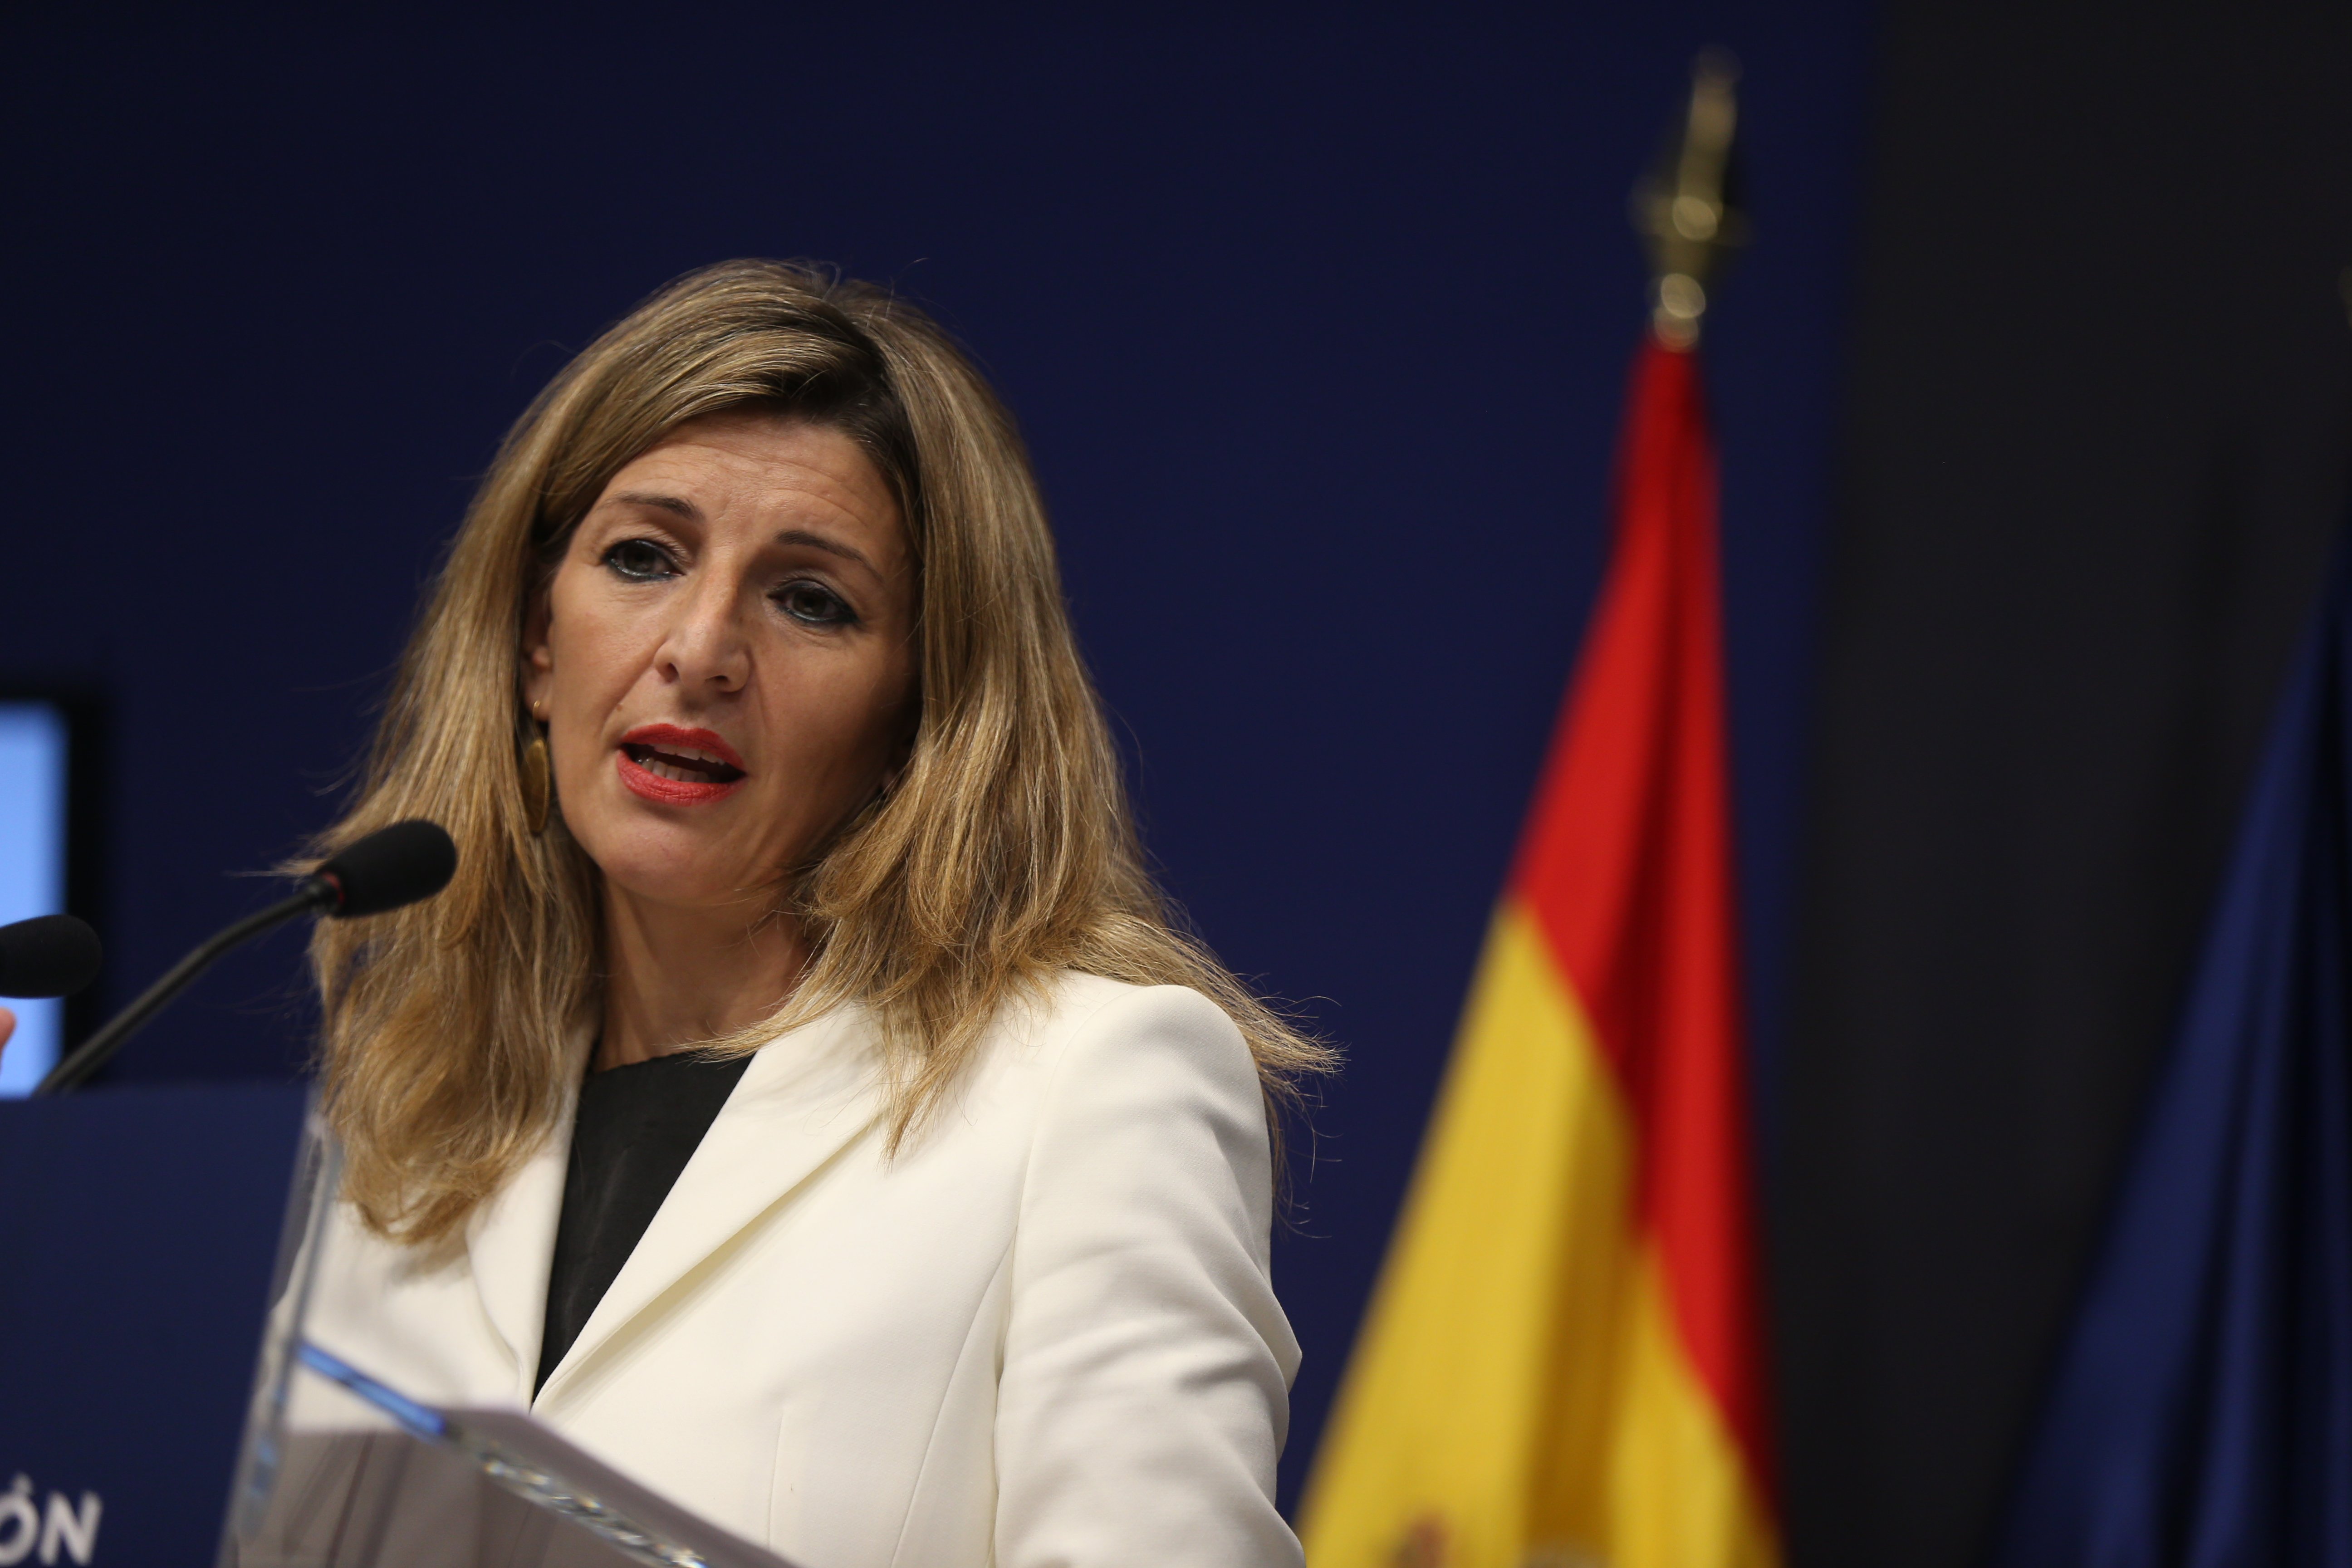 Baños posa deures a Yolanda Díaz per Joan Carles I: "Segur que no ho permetrà"